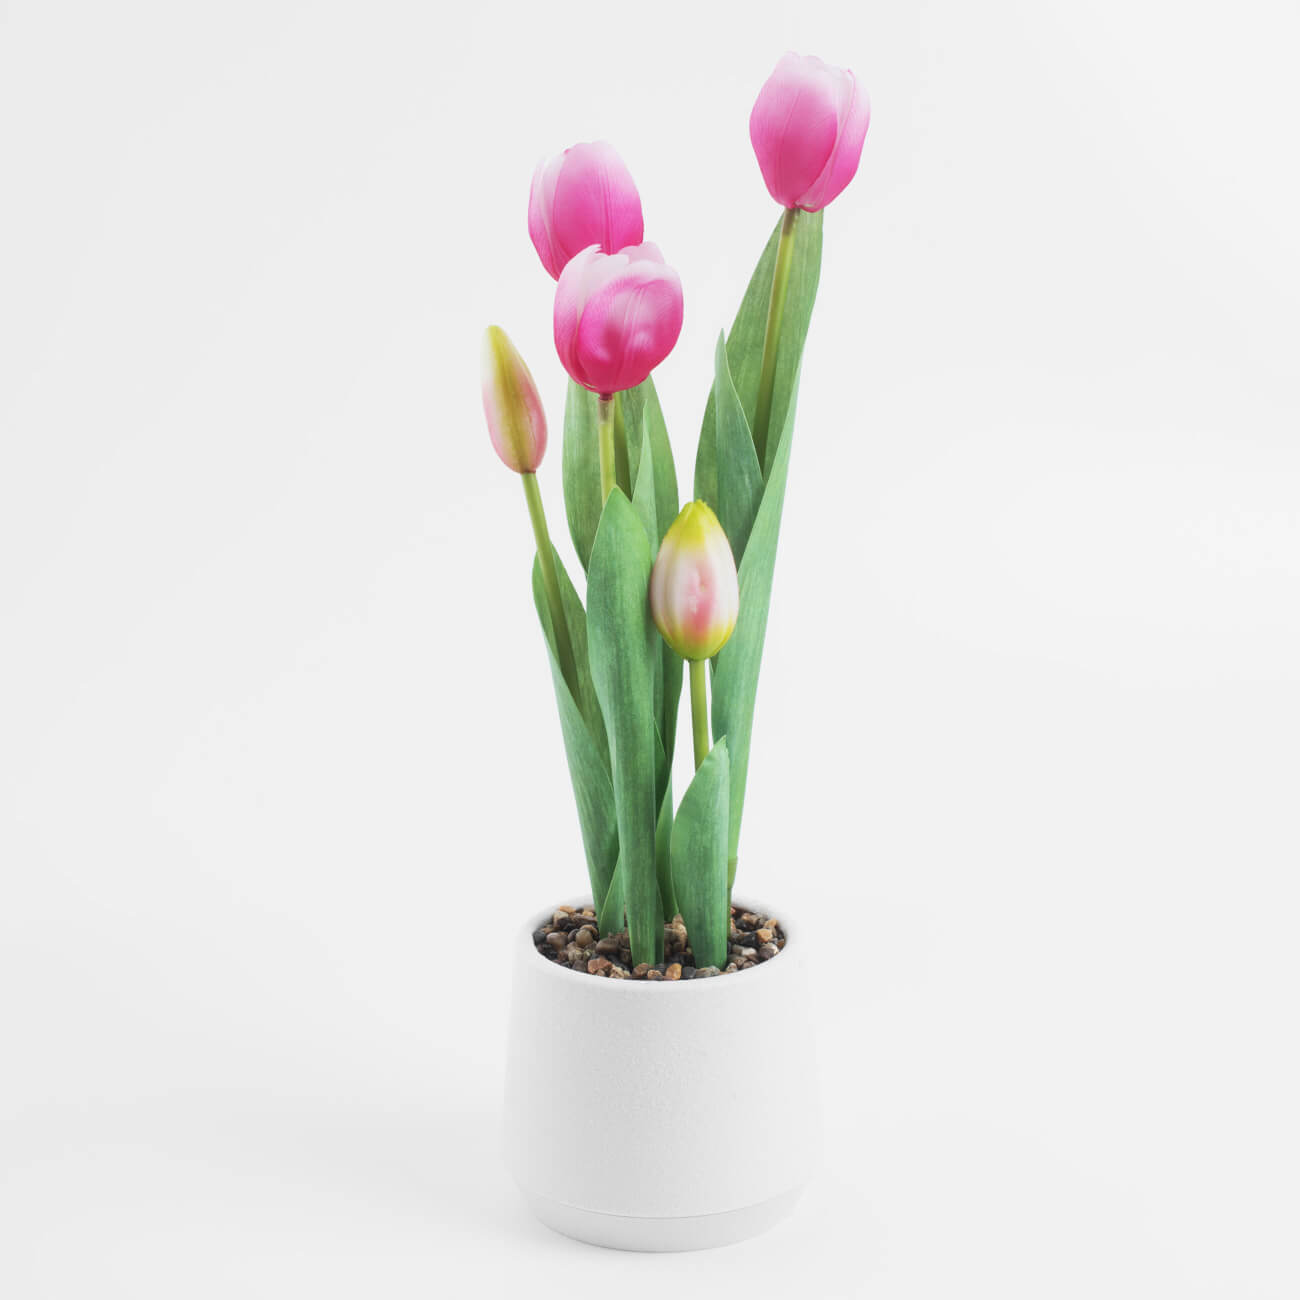 Растение искусственное, 36 см, в горшке, полиэстер/пластик, Розовые тюльпаны, Tulip garden растение искусственное аквариумное на платформе в виде коряги 30 см зелёное